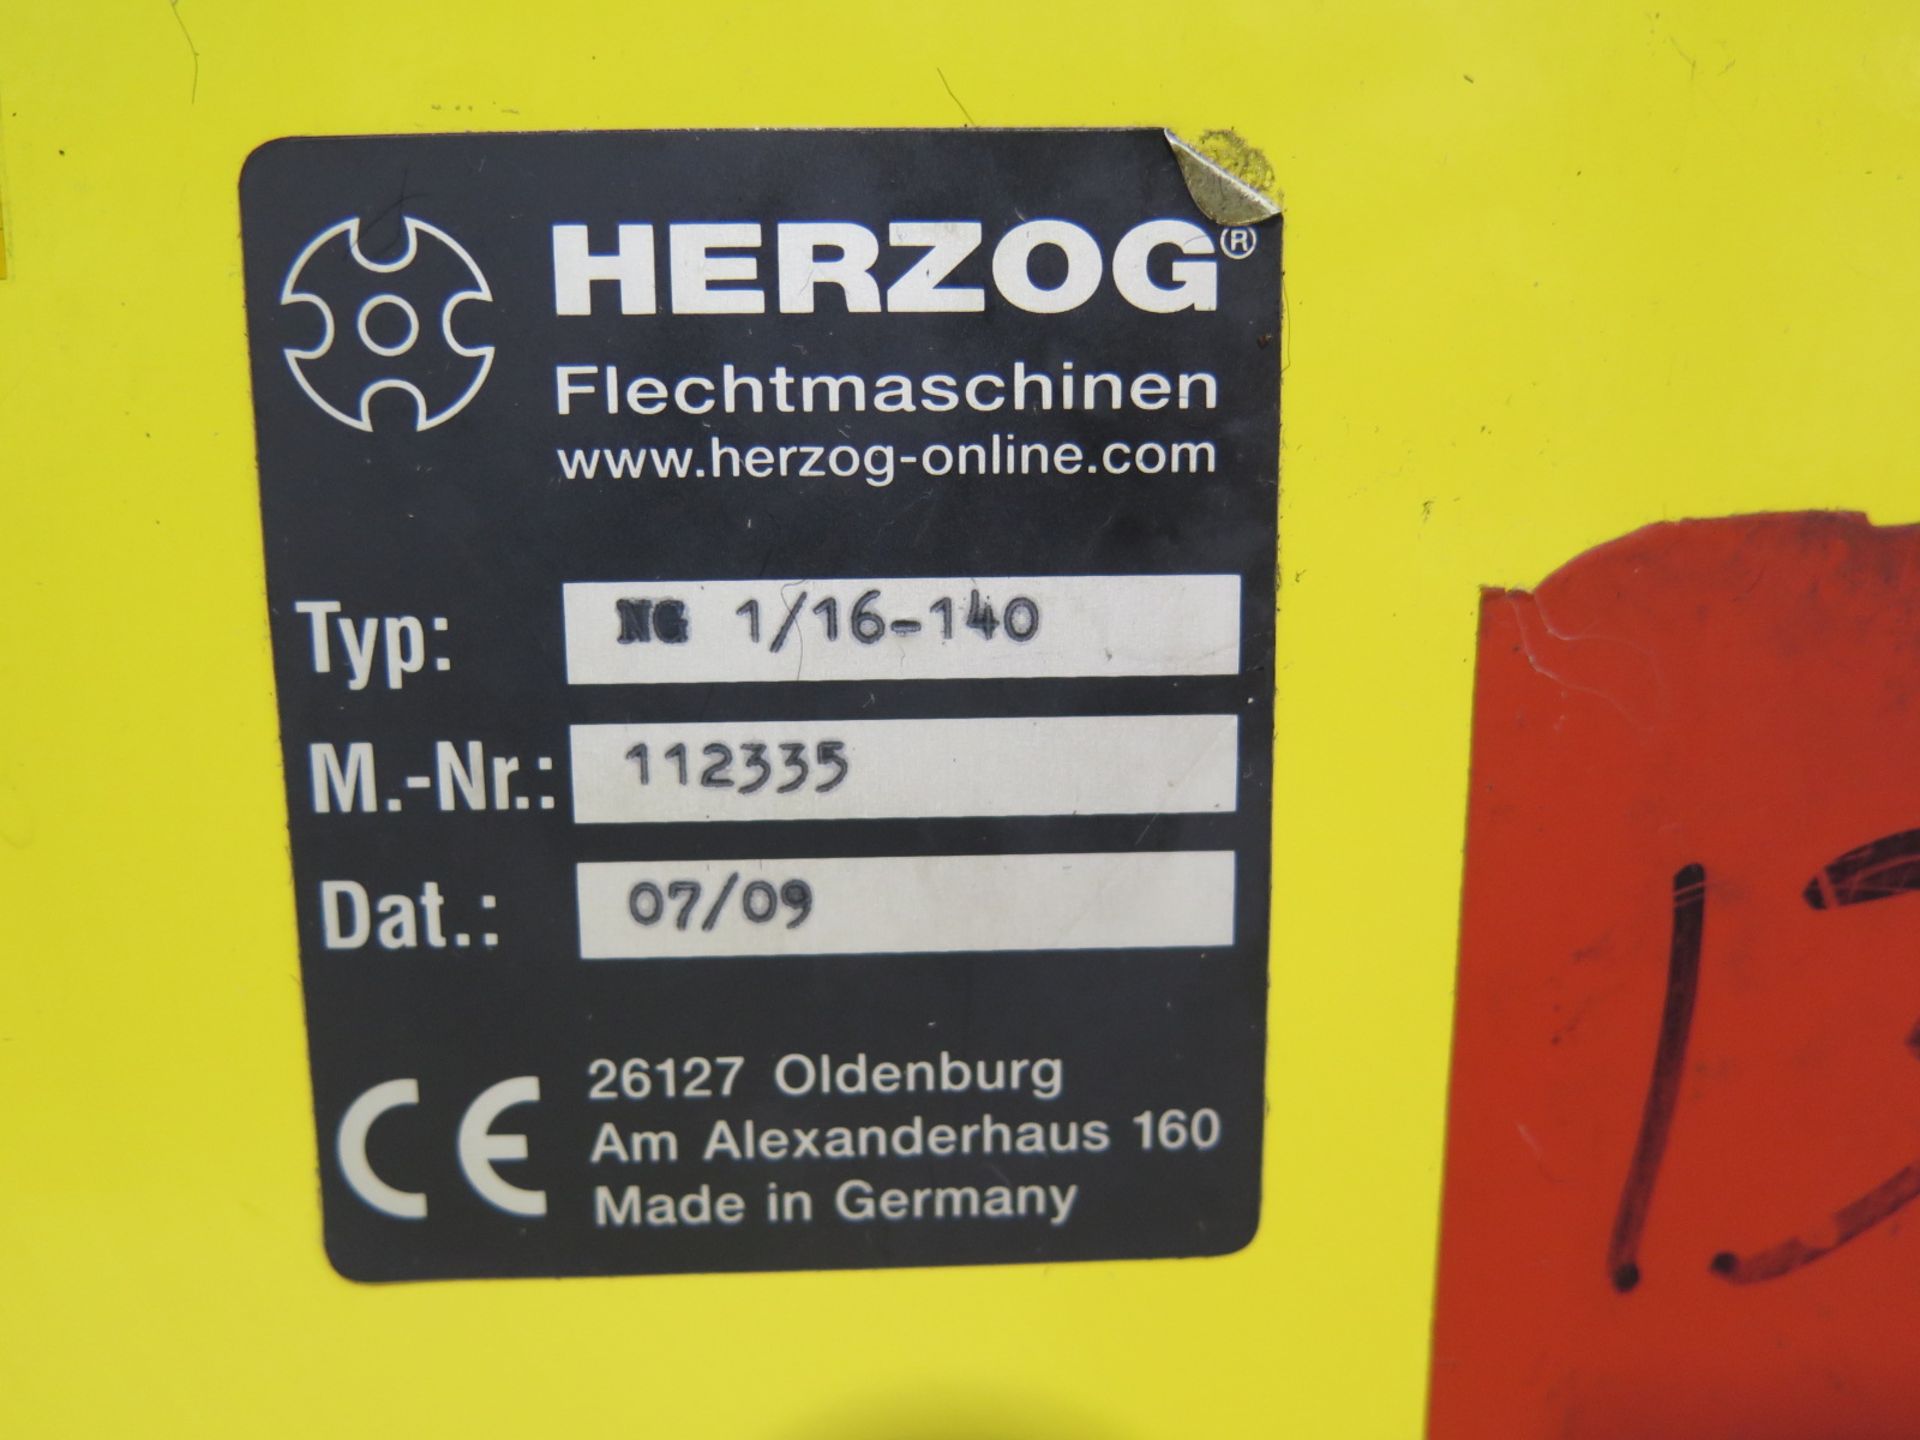 2009 Herzog mdl. NG 1/16-140 Rope Braiding Machine s/n 112335 w/ 16-Bobbins - Image 6 of 8